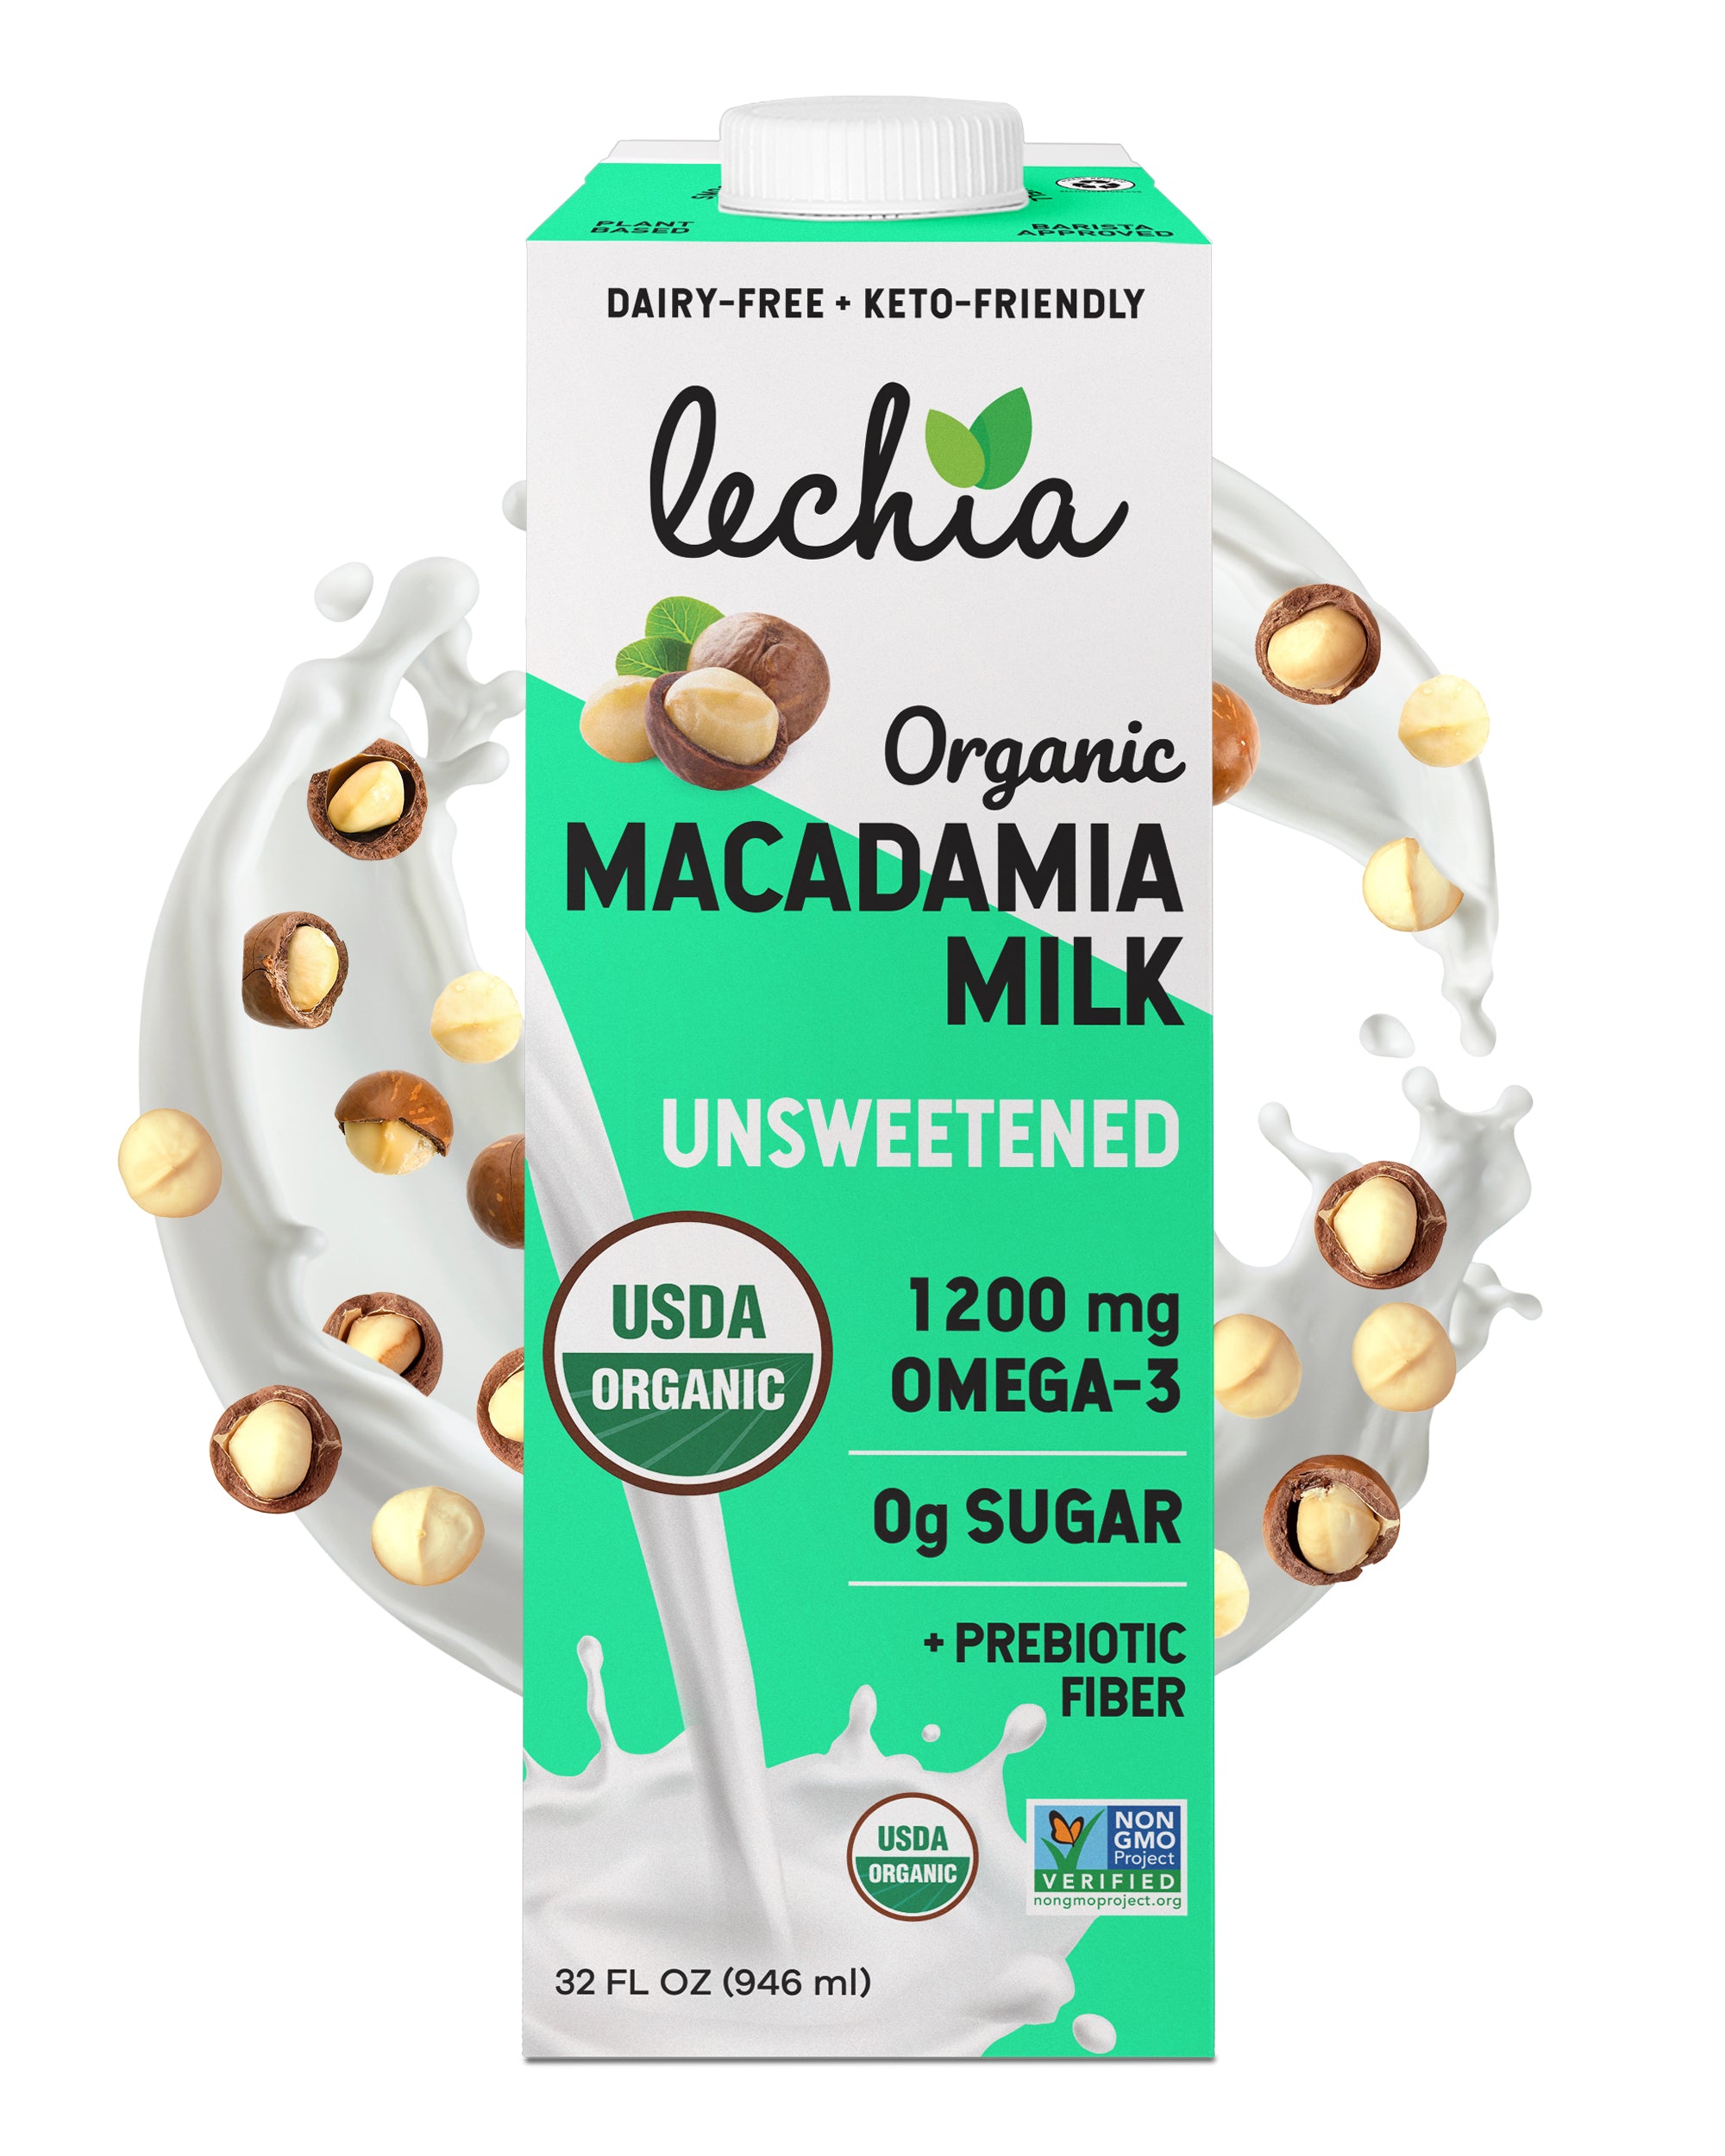 Macadamia Milk - Unsweetened